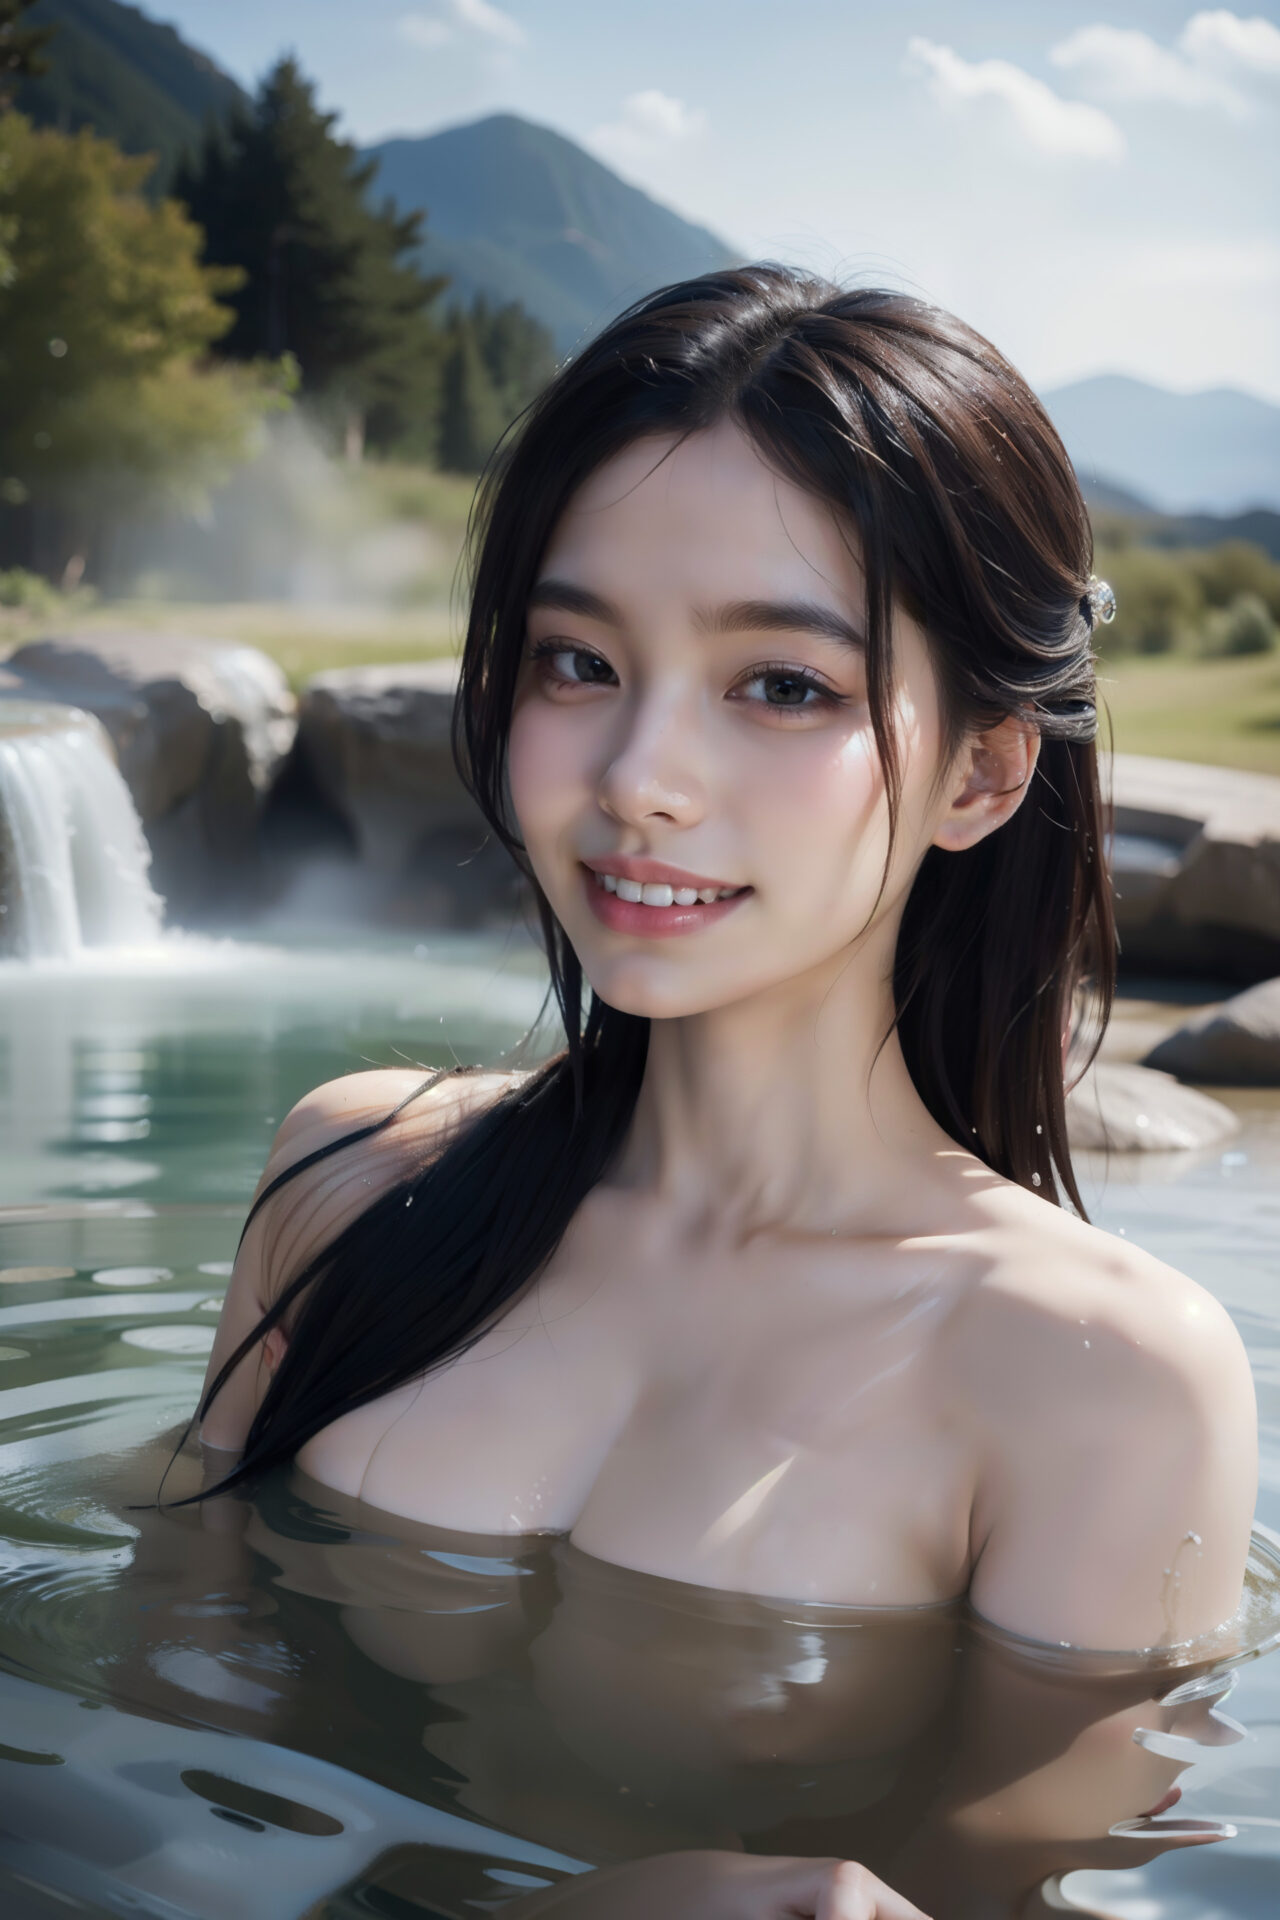 のどかな景色の野天風呂に浸かる笑顔の女性